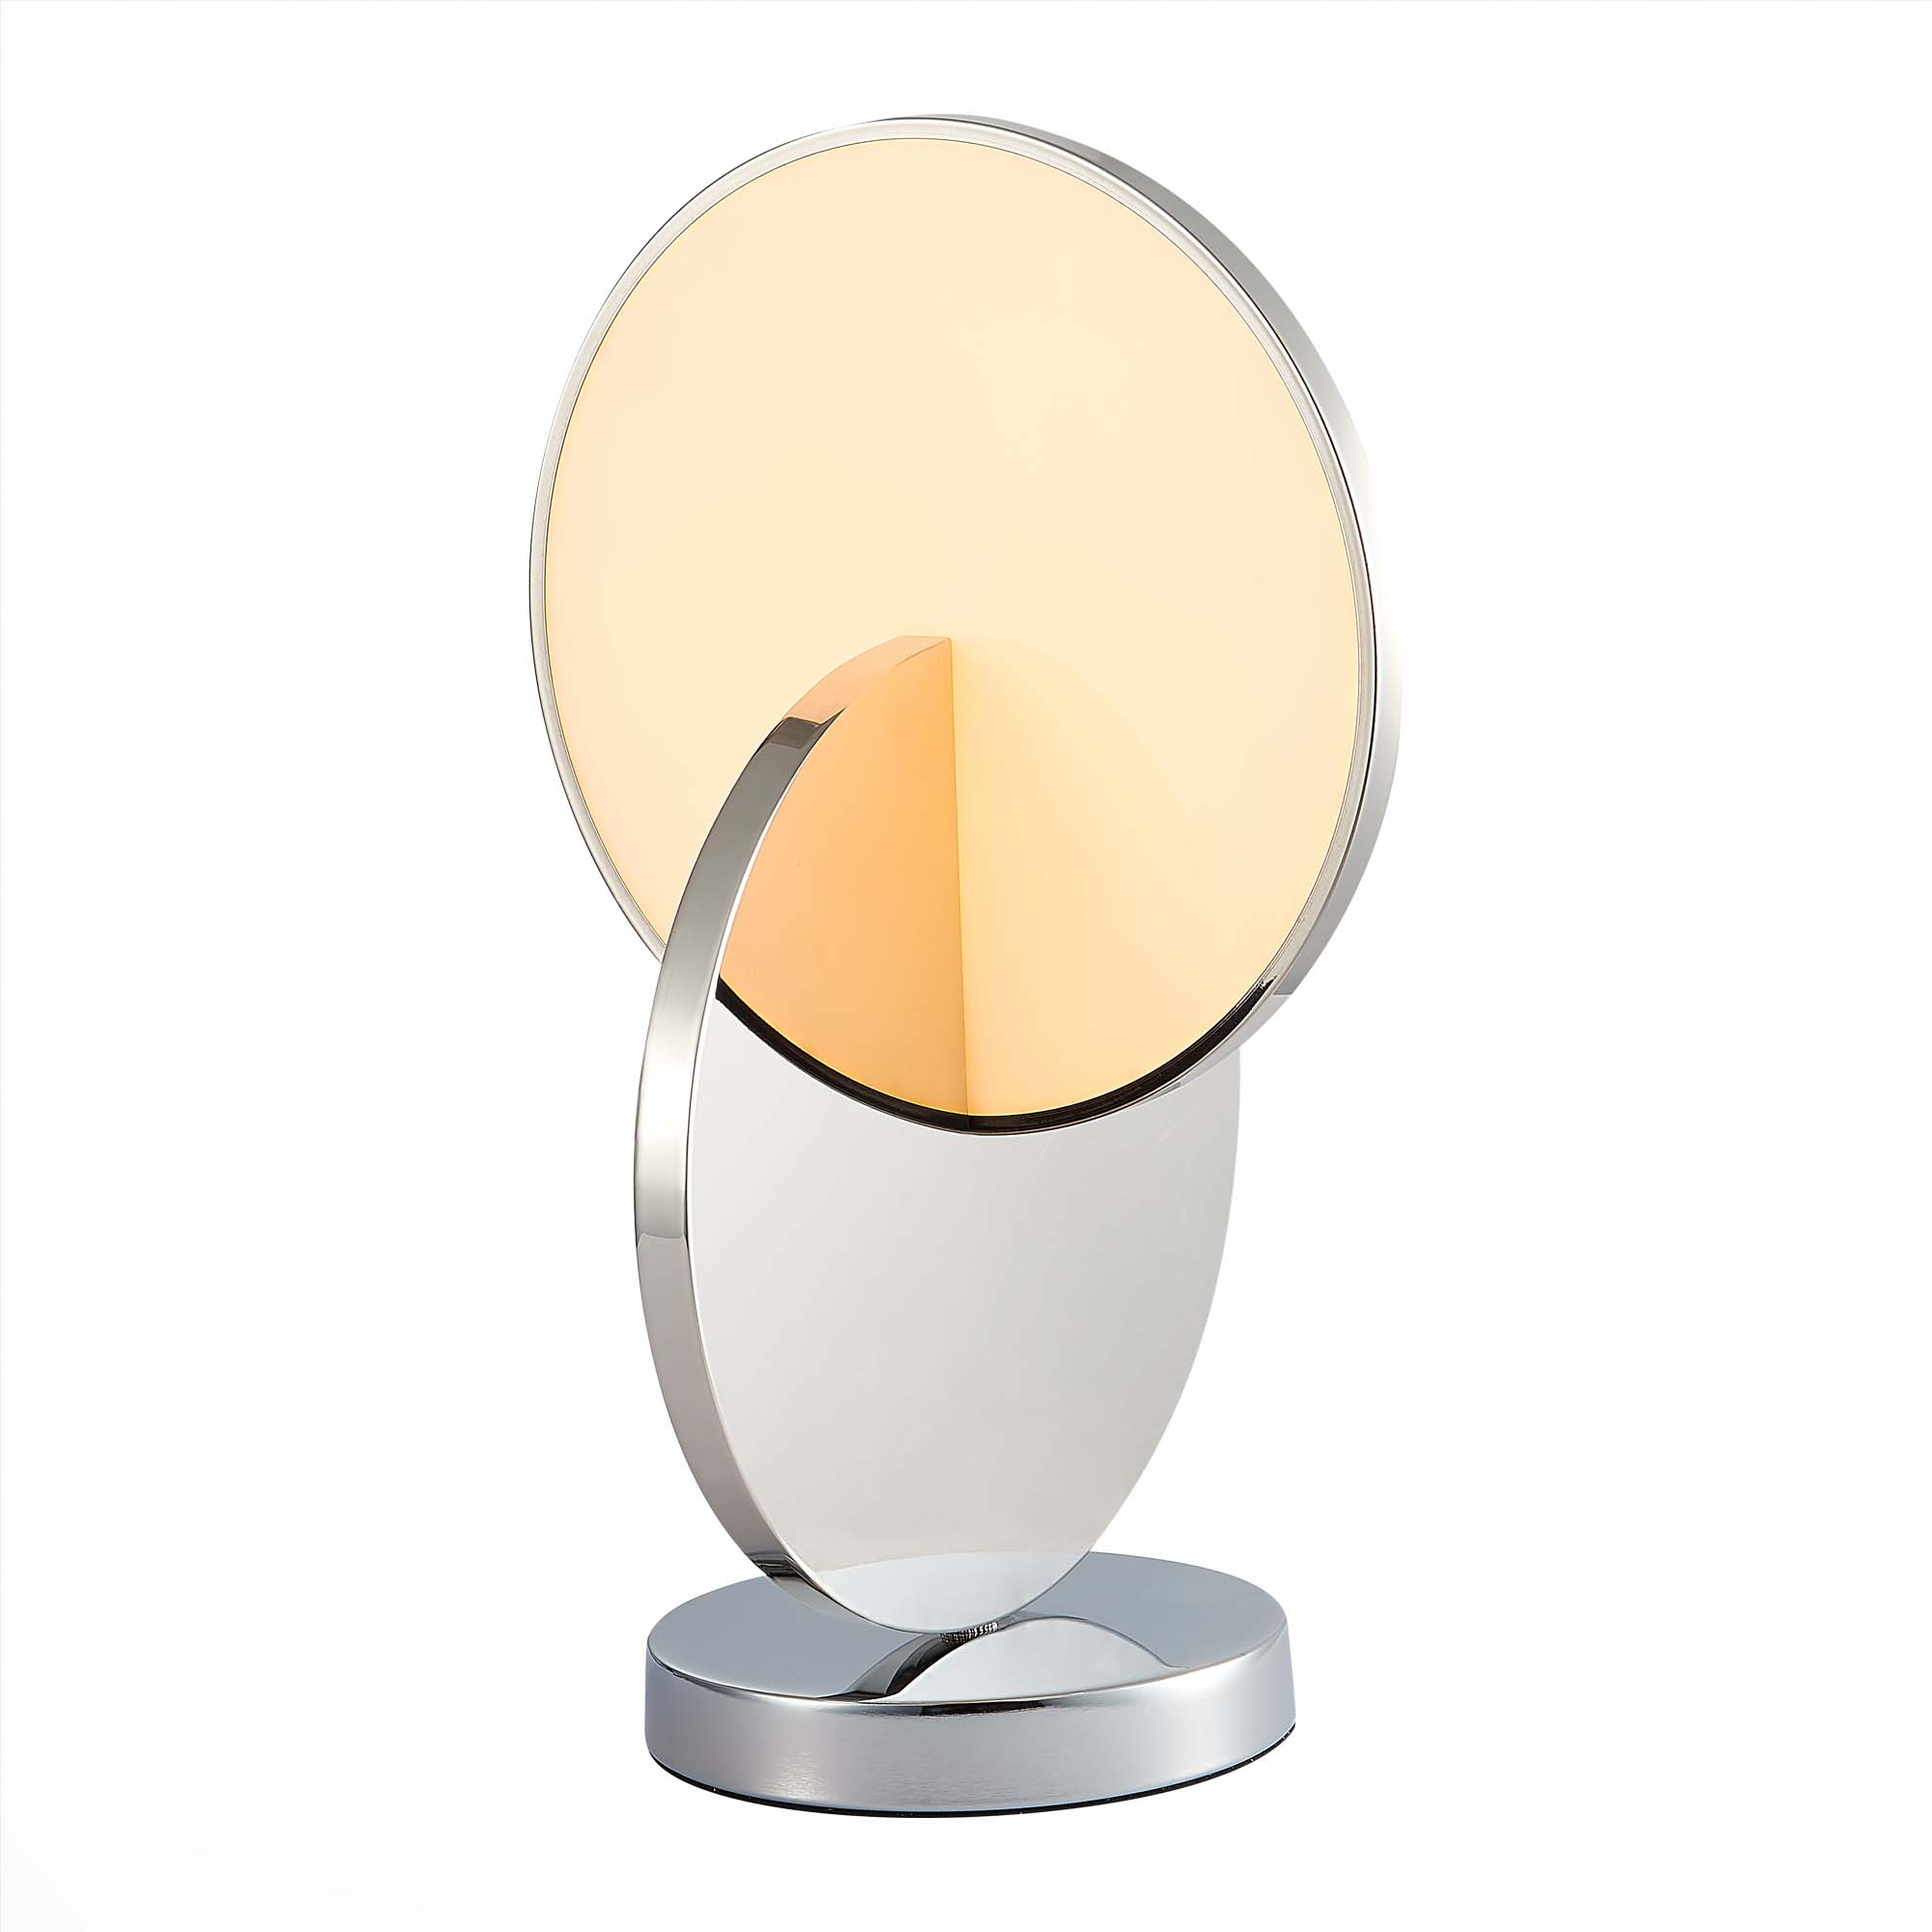 Настольная дизайнерская лампа ST Luce Eclisse SL6107.104.01